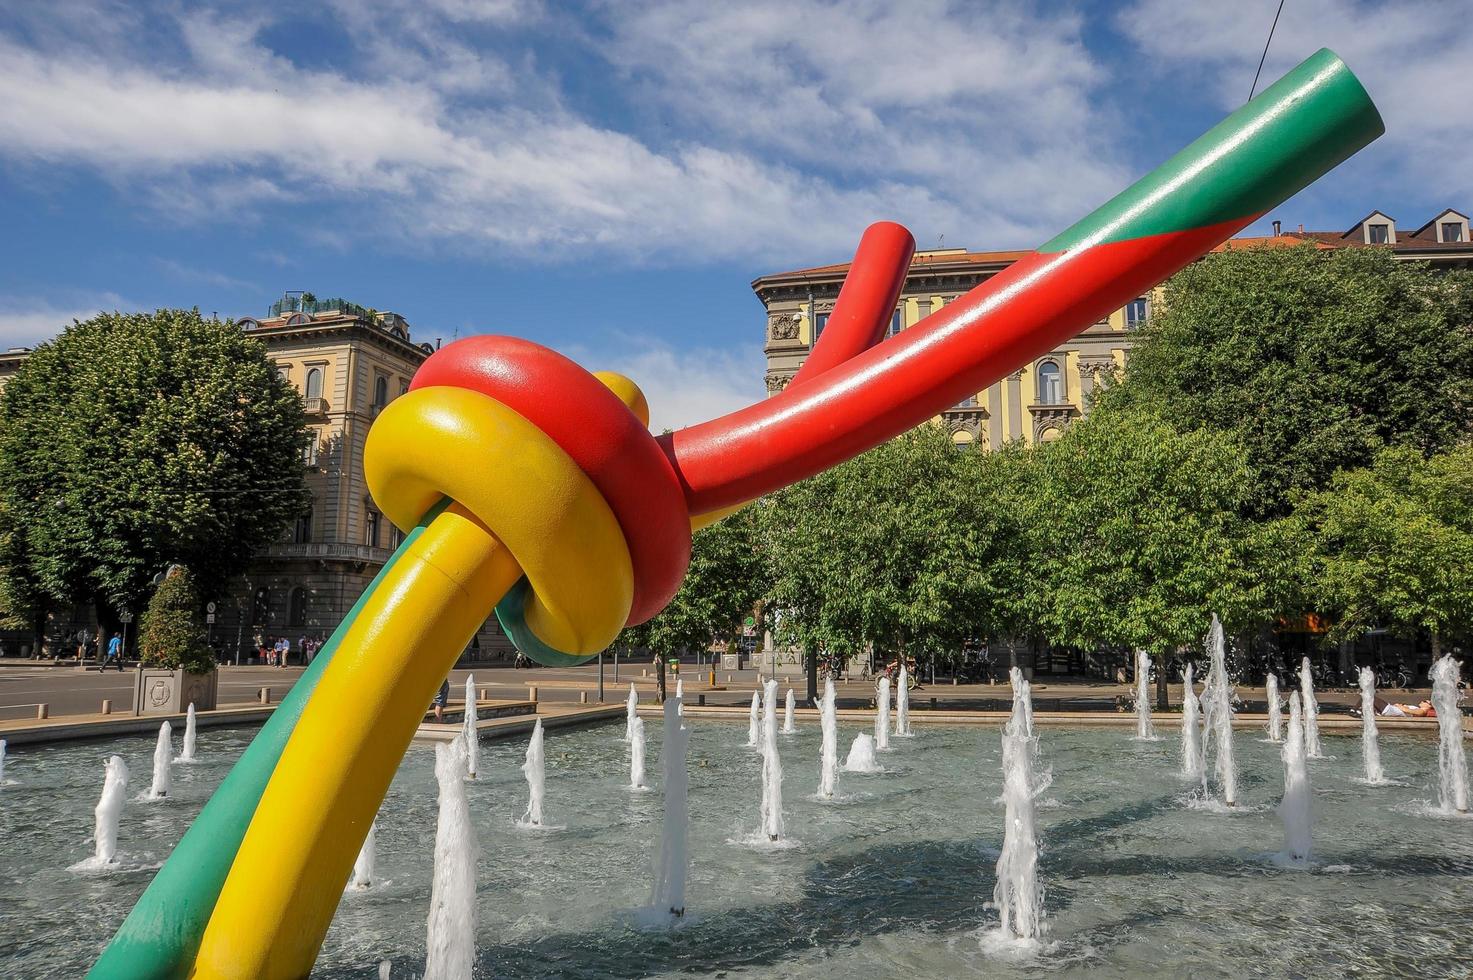 milano italia 2014 scultura che rappresenta ago e filo in omaggio alla moda in piazza cadorna a milano foto